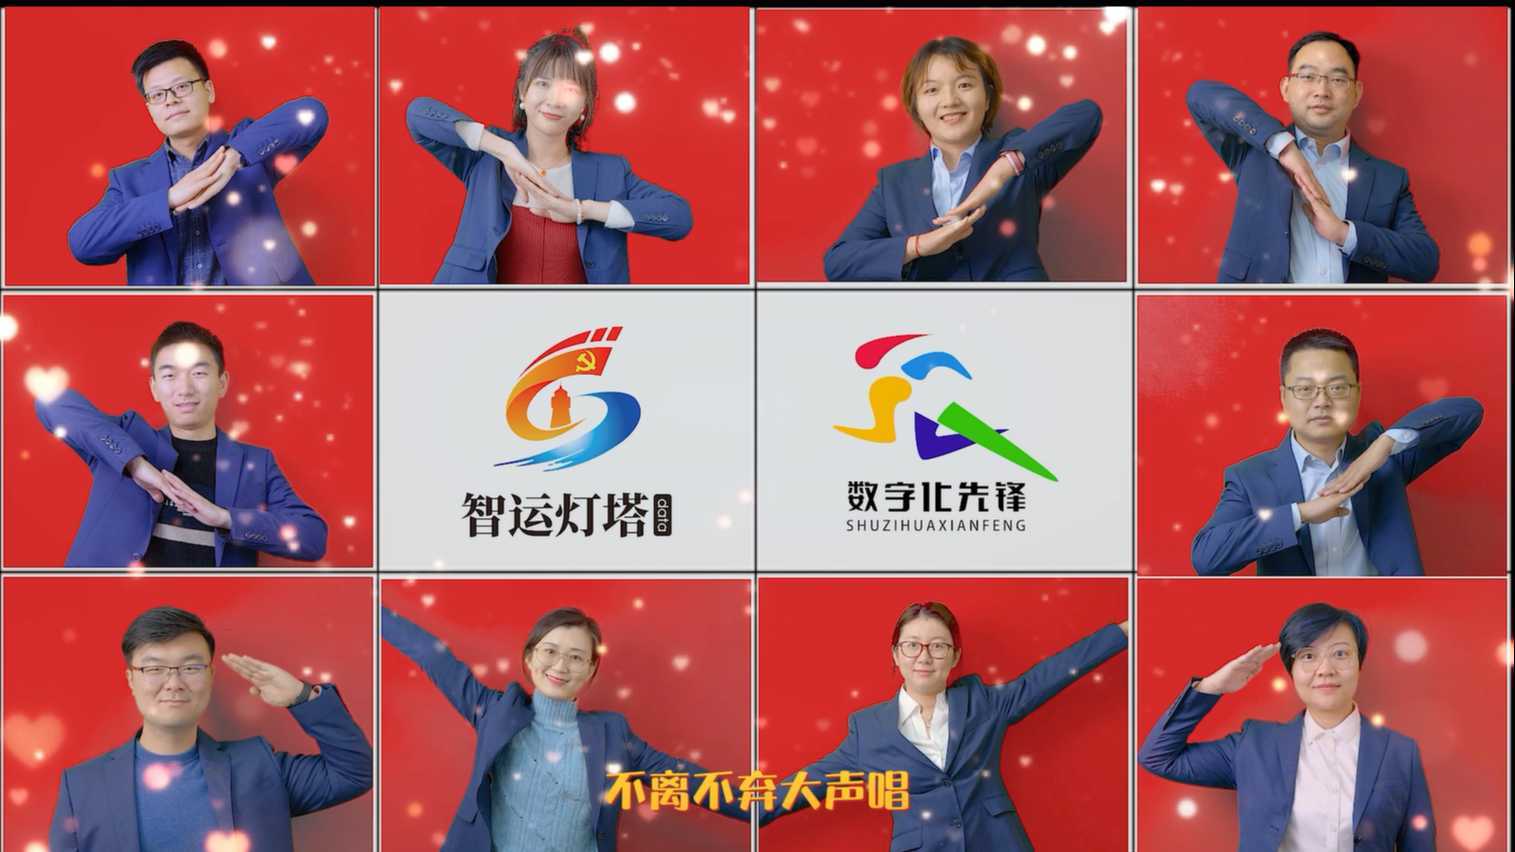 中国电信安徽公司 电子渠道部门新年祝福